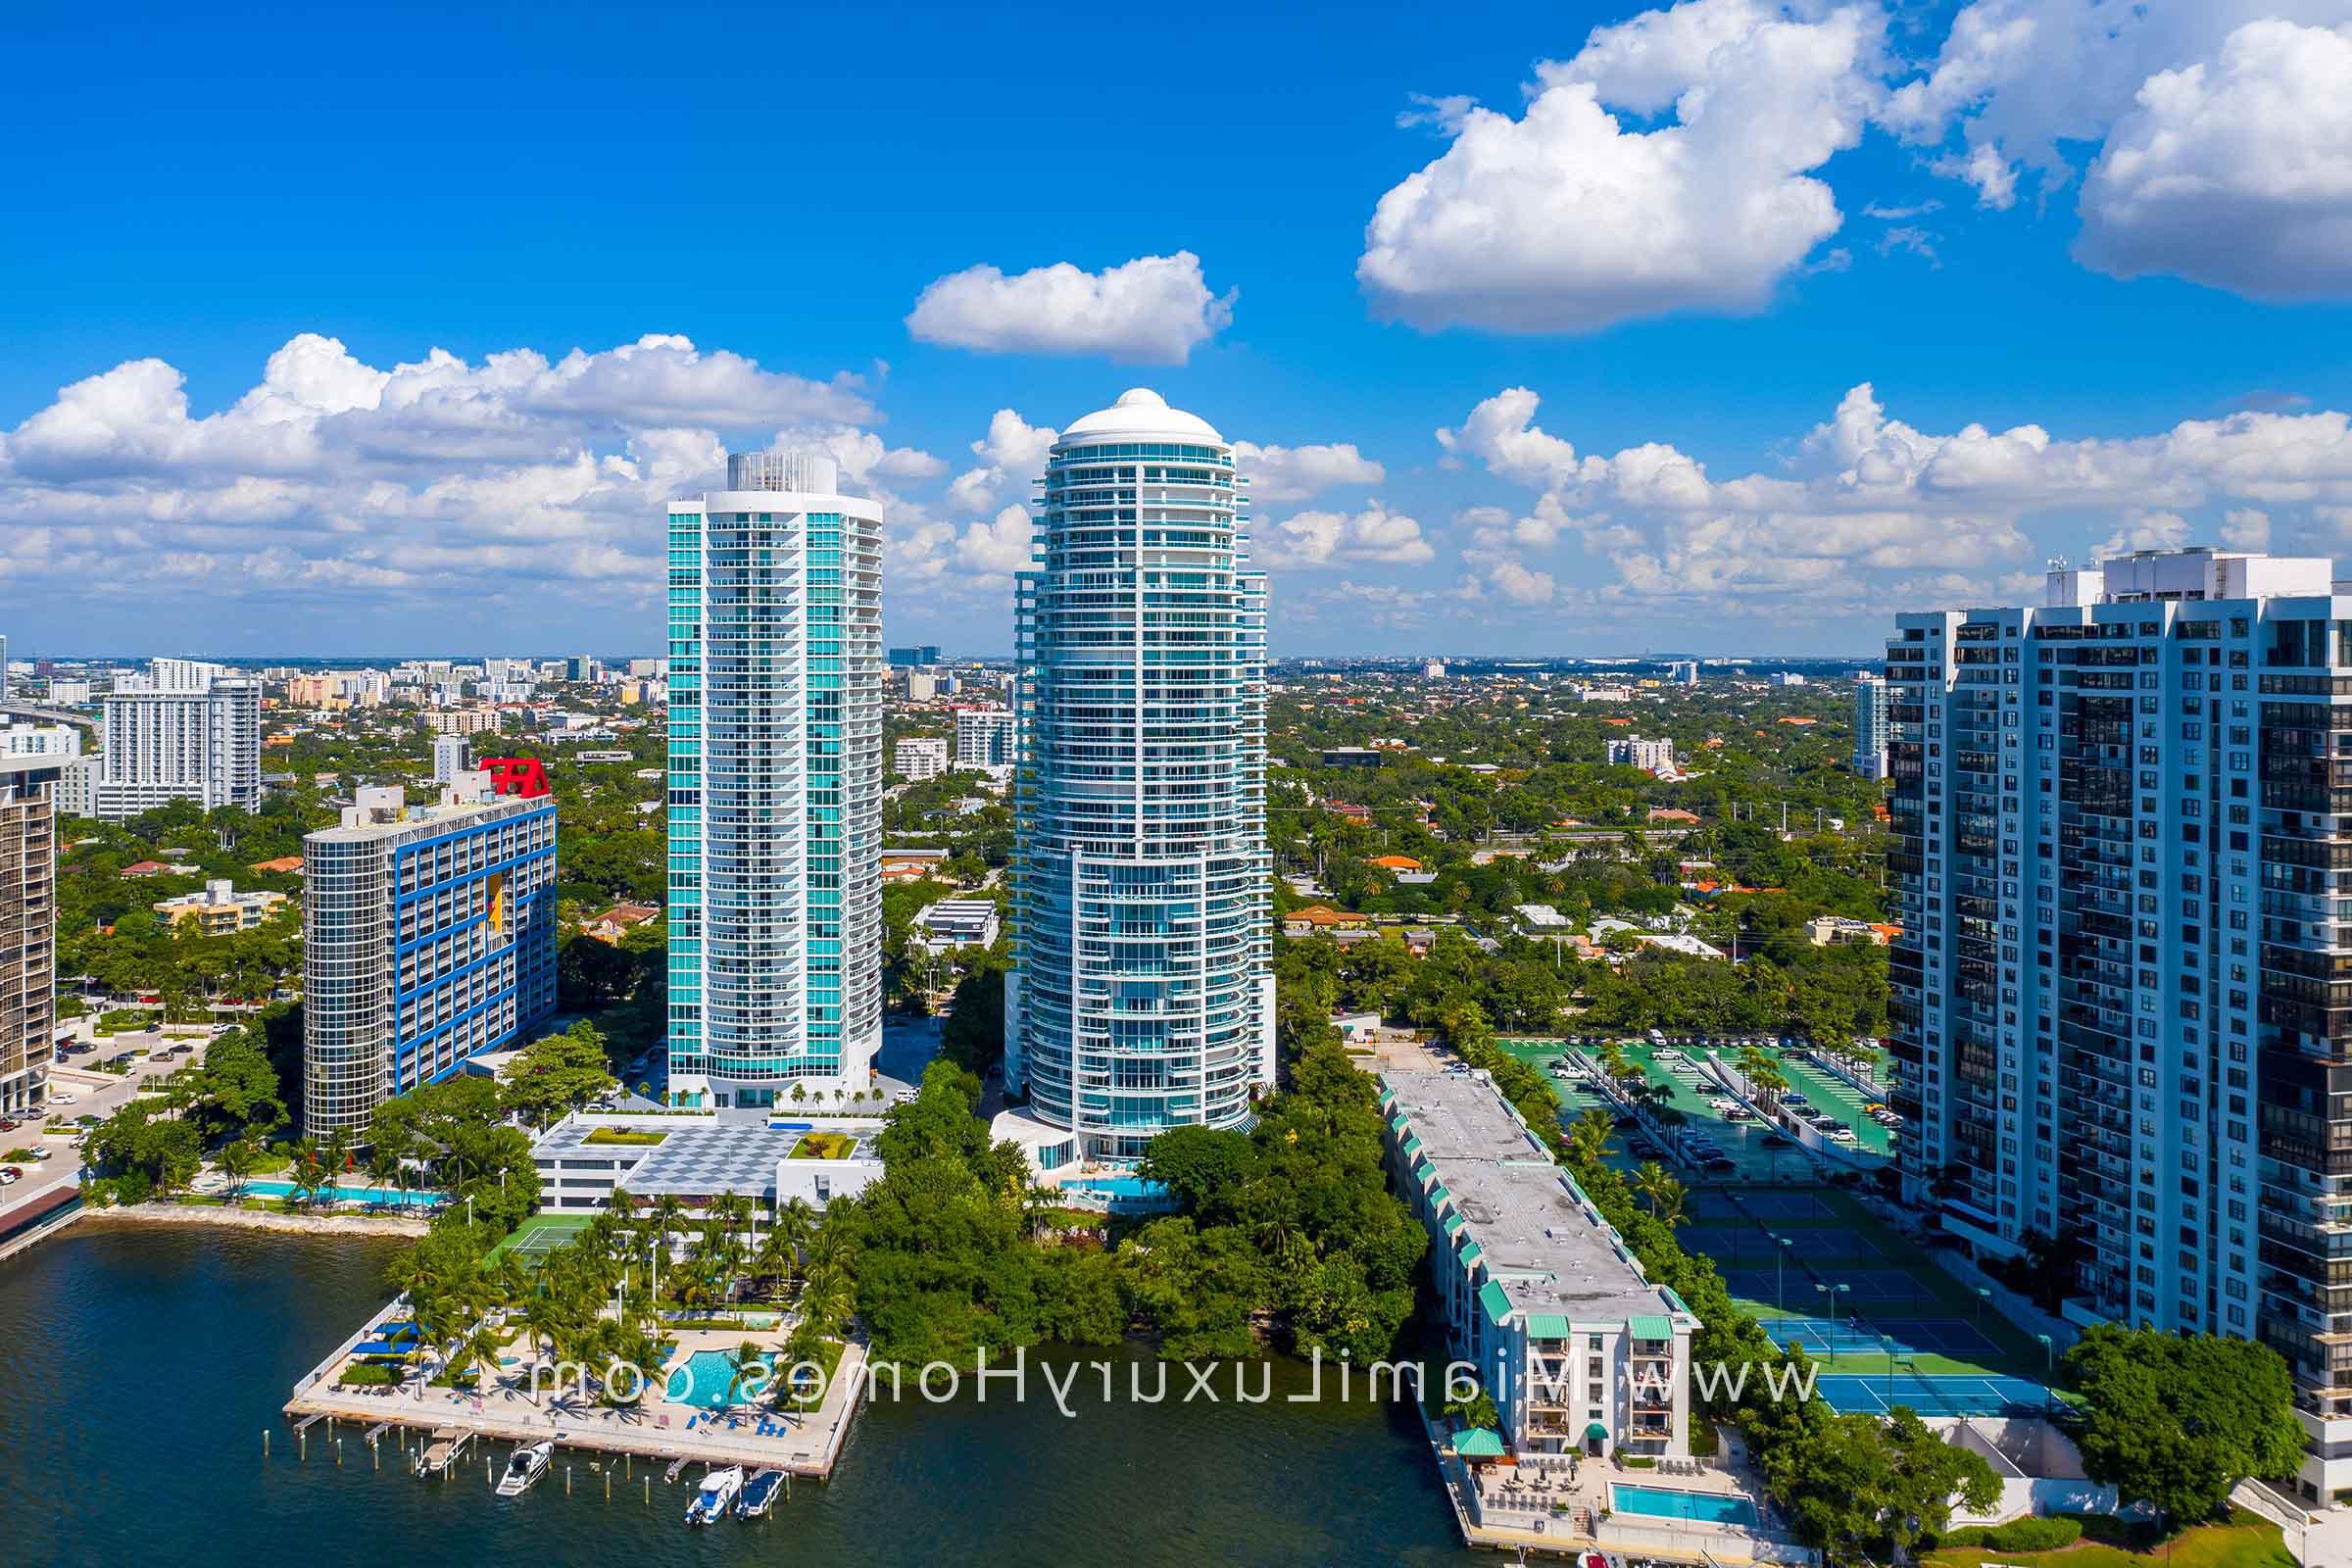 Bristol Tower Condo Building in Miami